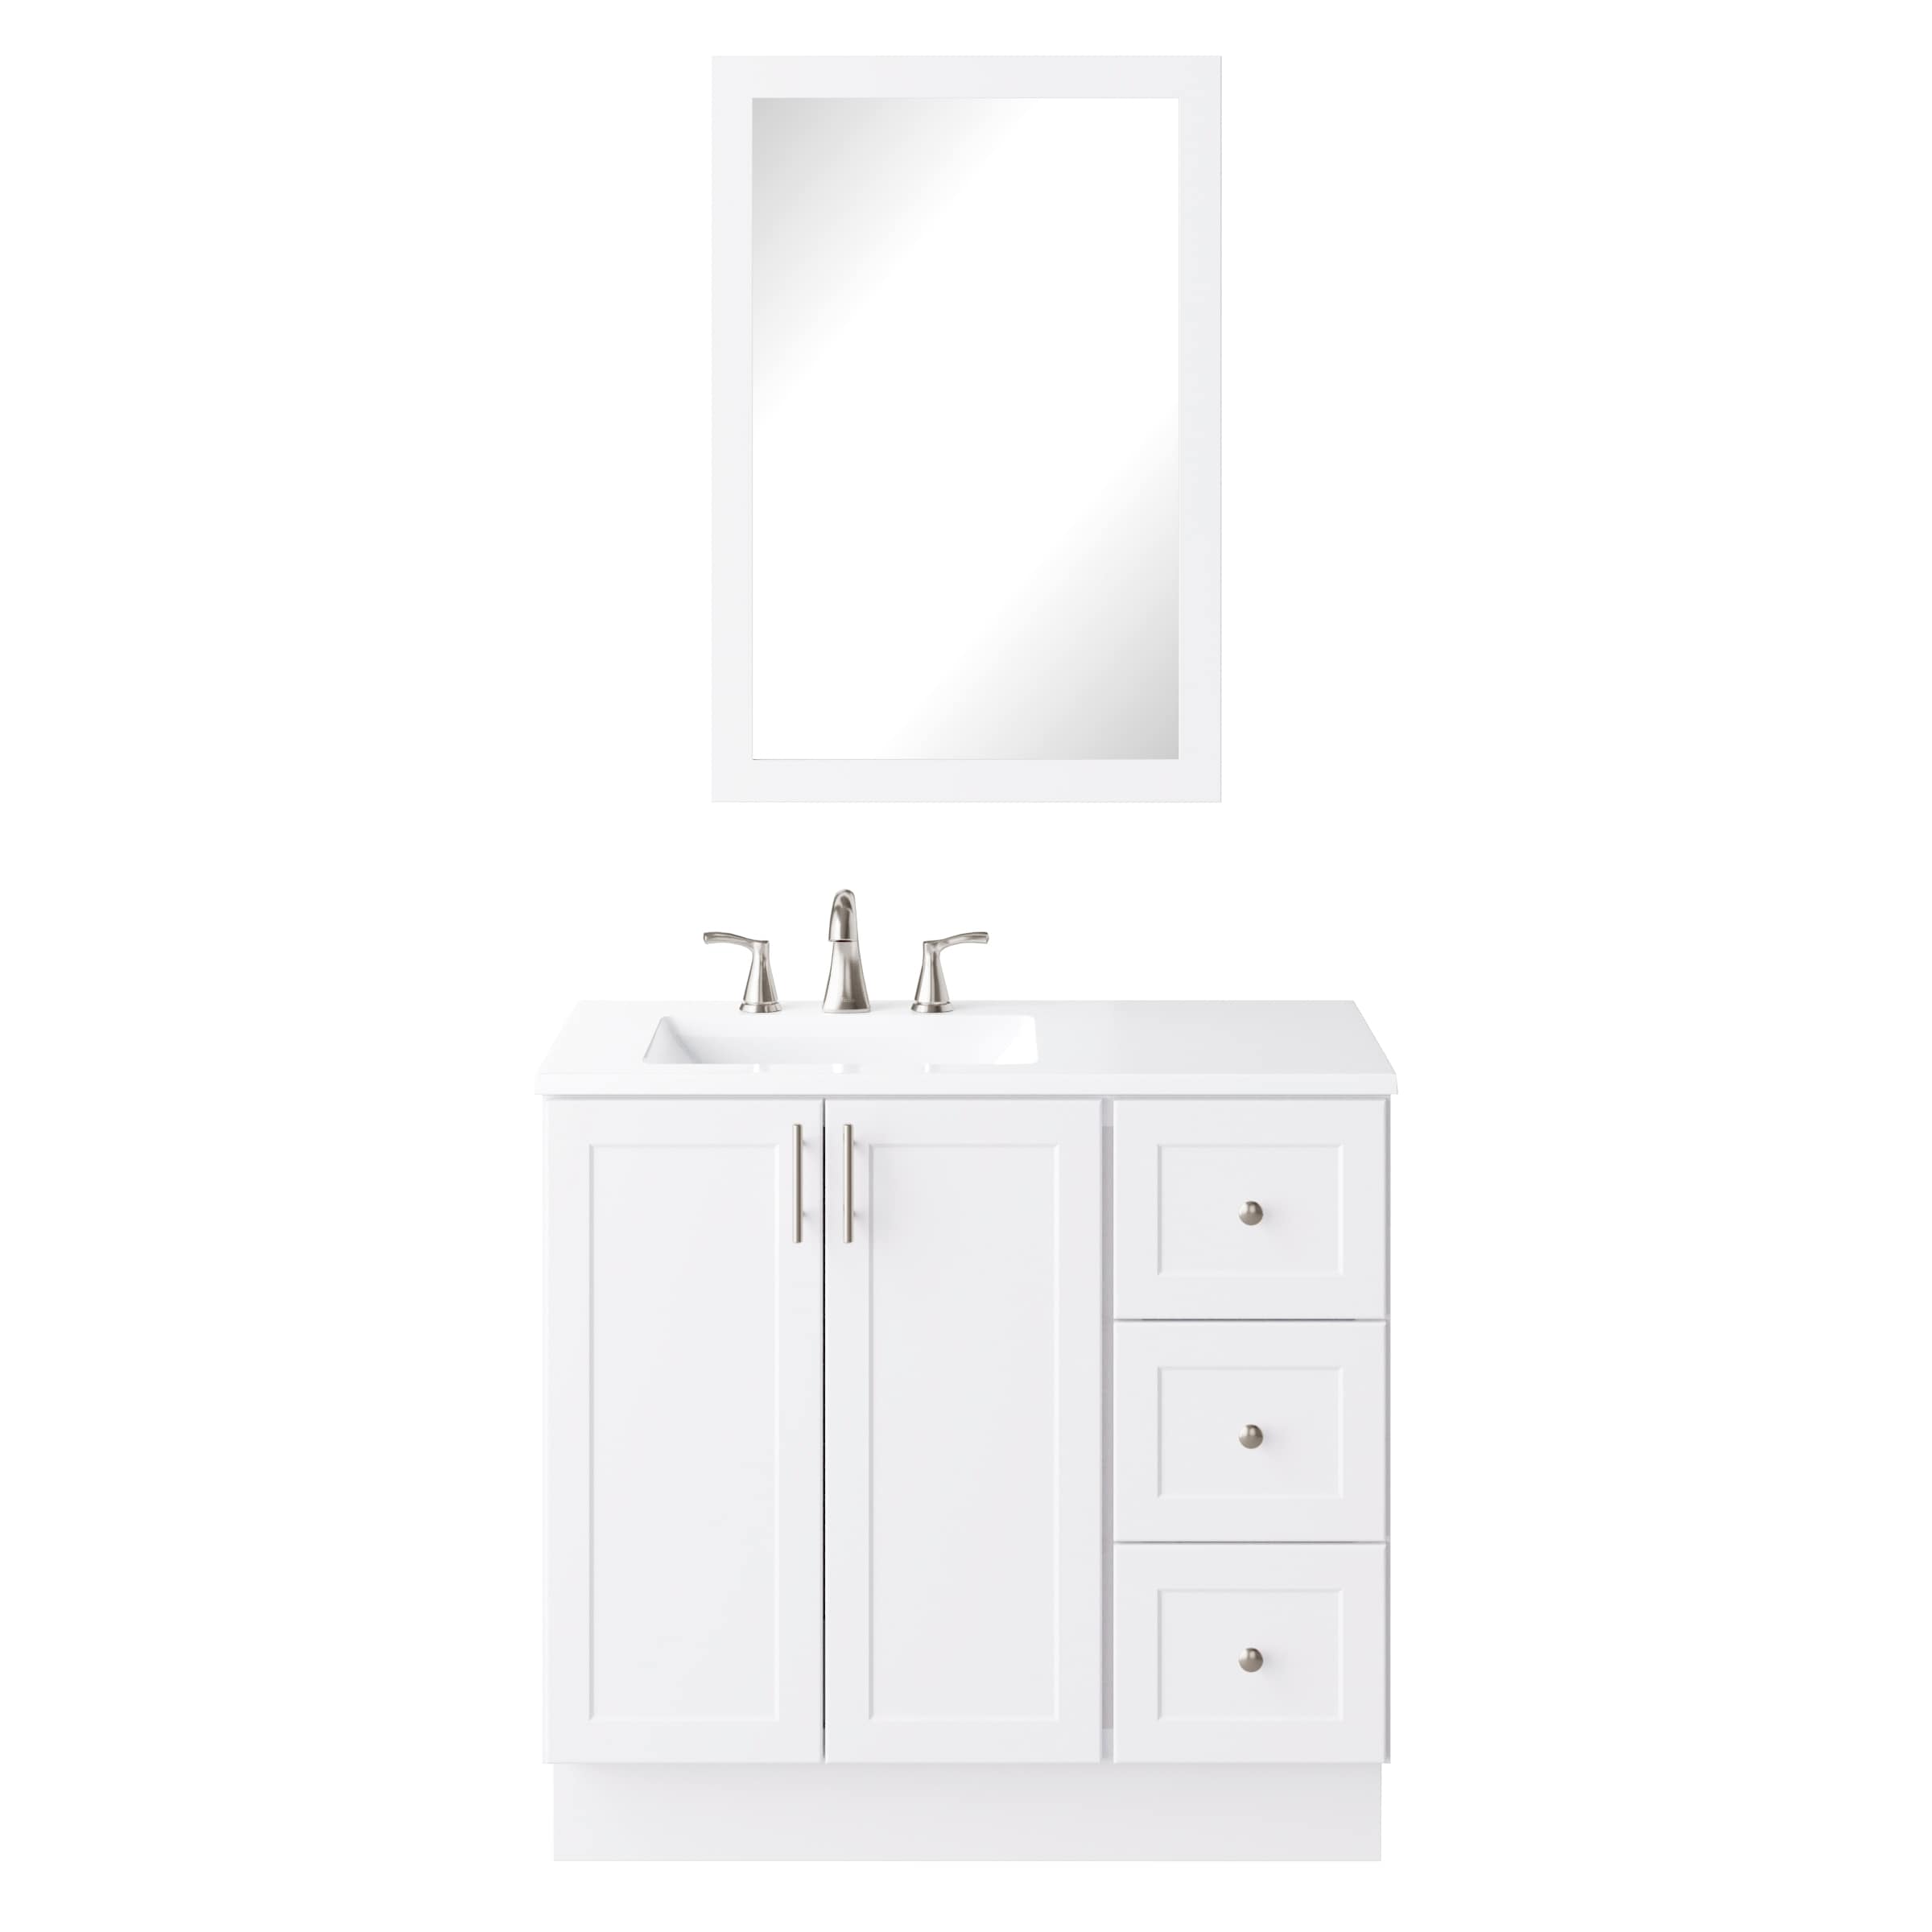 White Single Sink Bathroom Vanity With, Bathroom Vanities 36 Inch Height